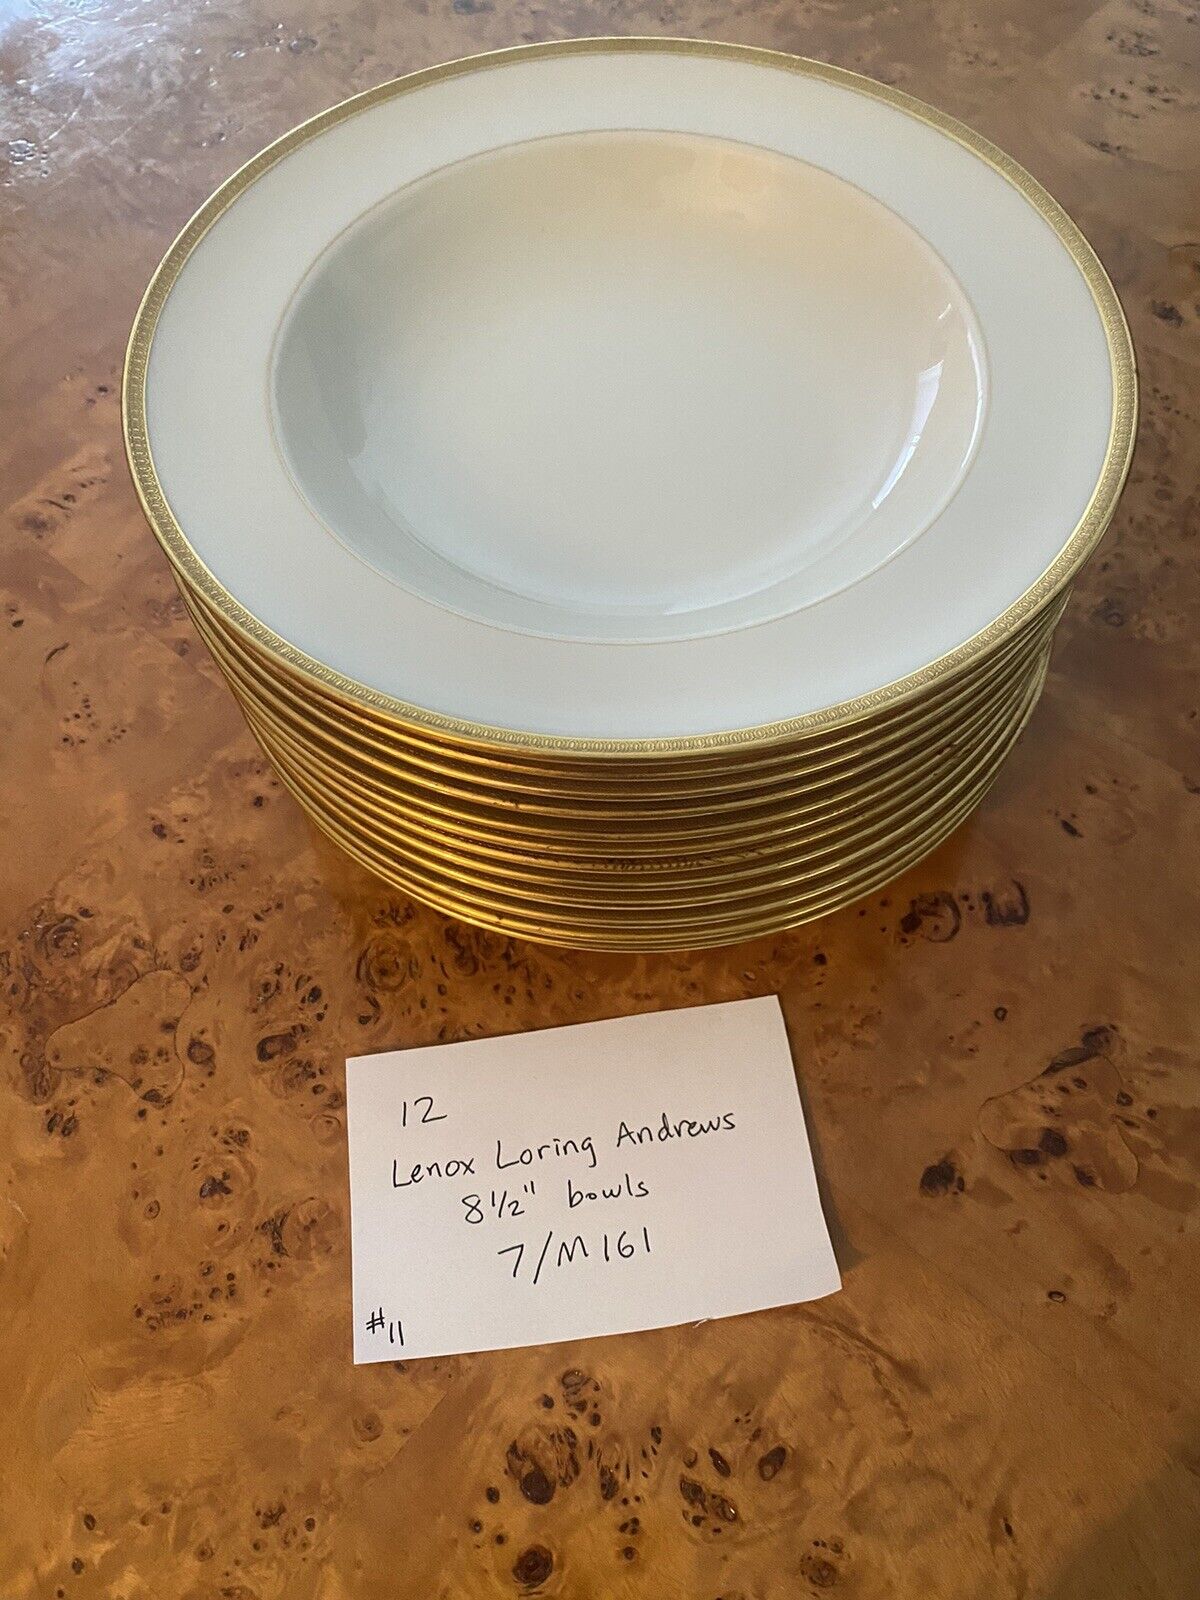 Lot of 12 Lenox Loring Andrews vintage china bowls - 8 1/2\